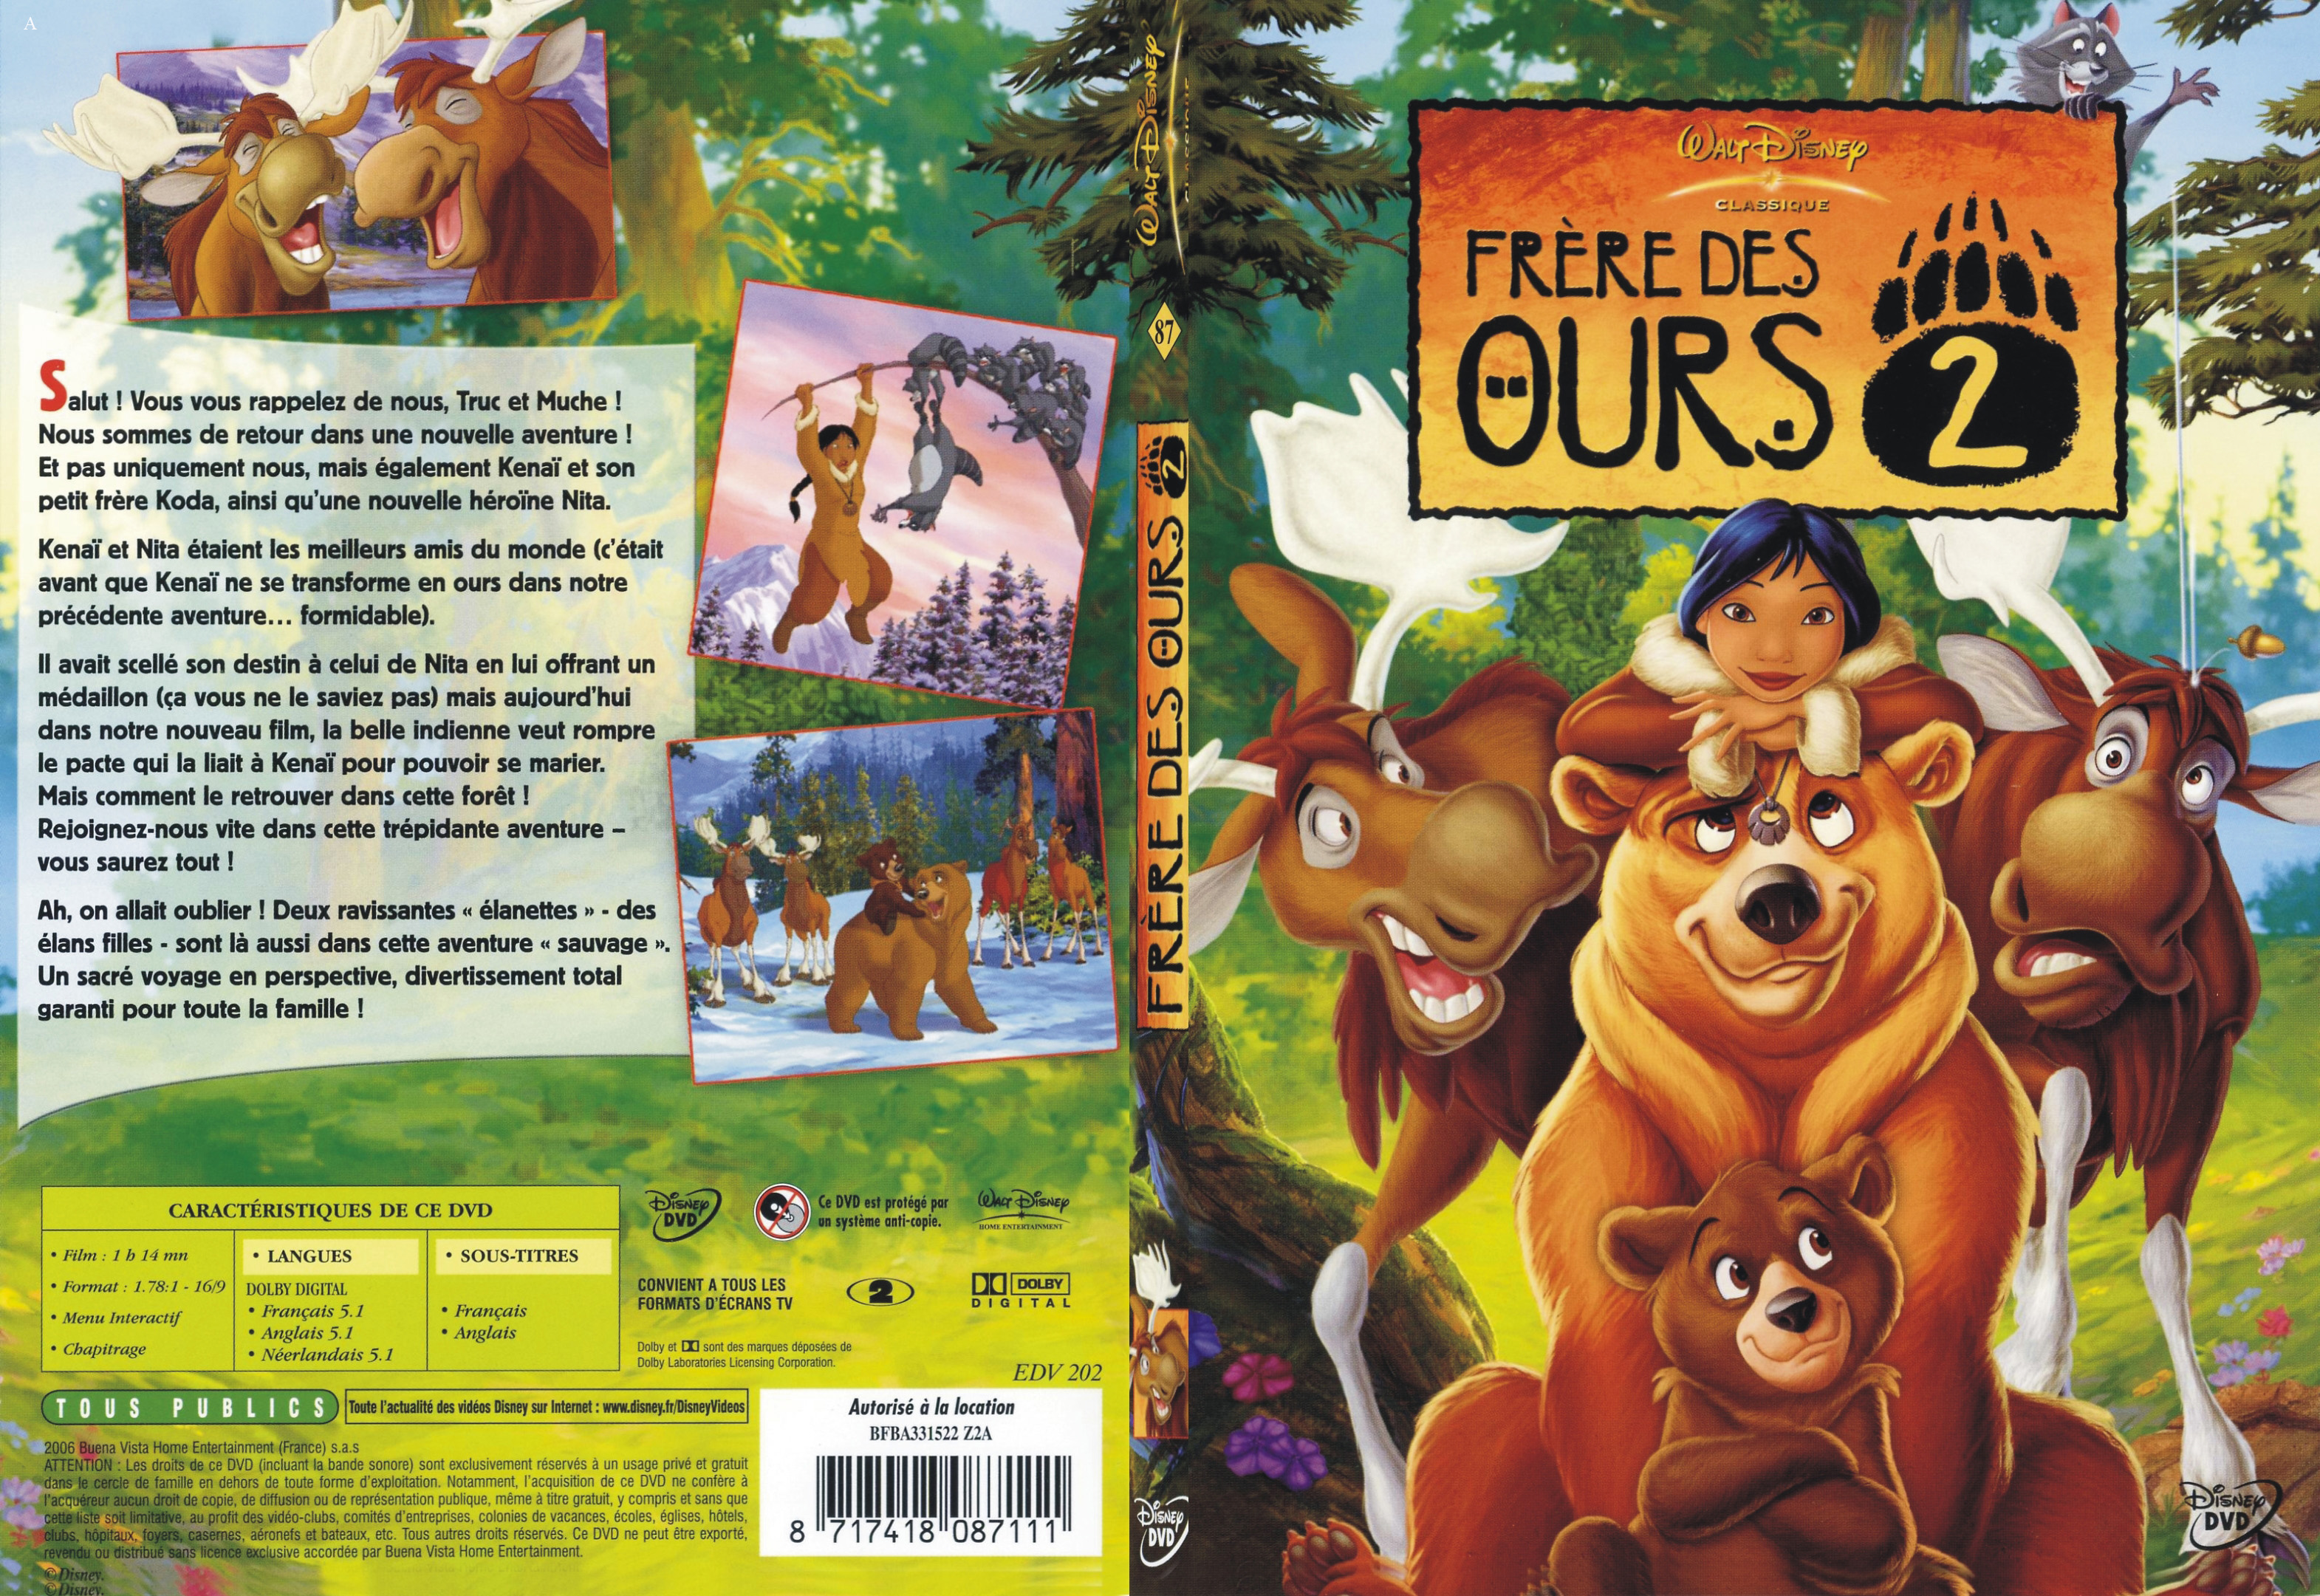 Jaquette DVD Frre des ours 2 - SLIM